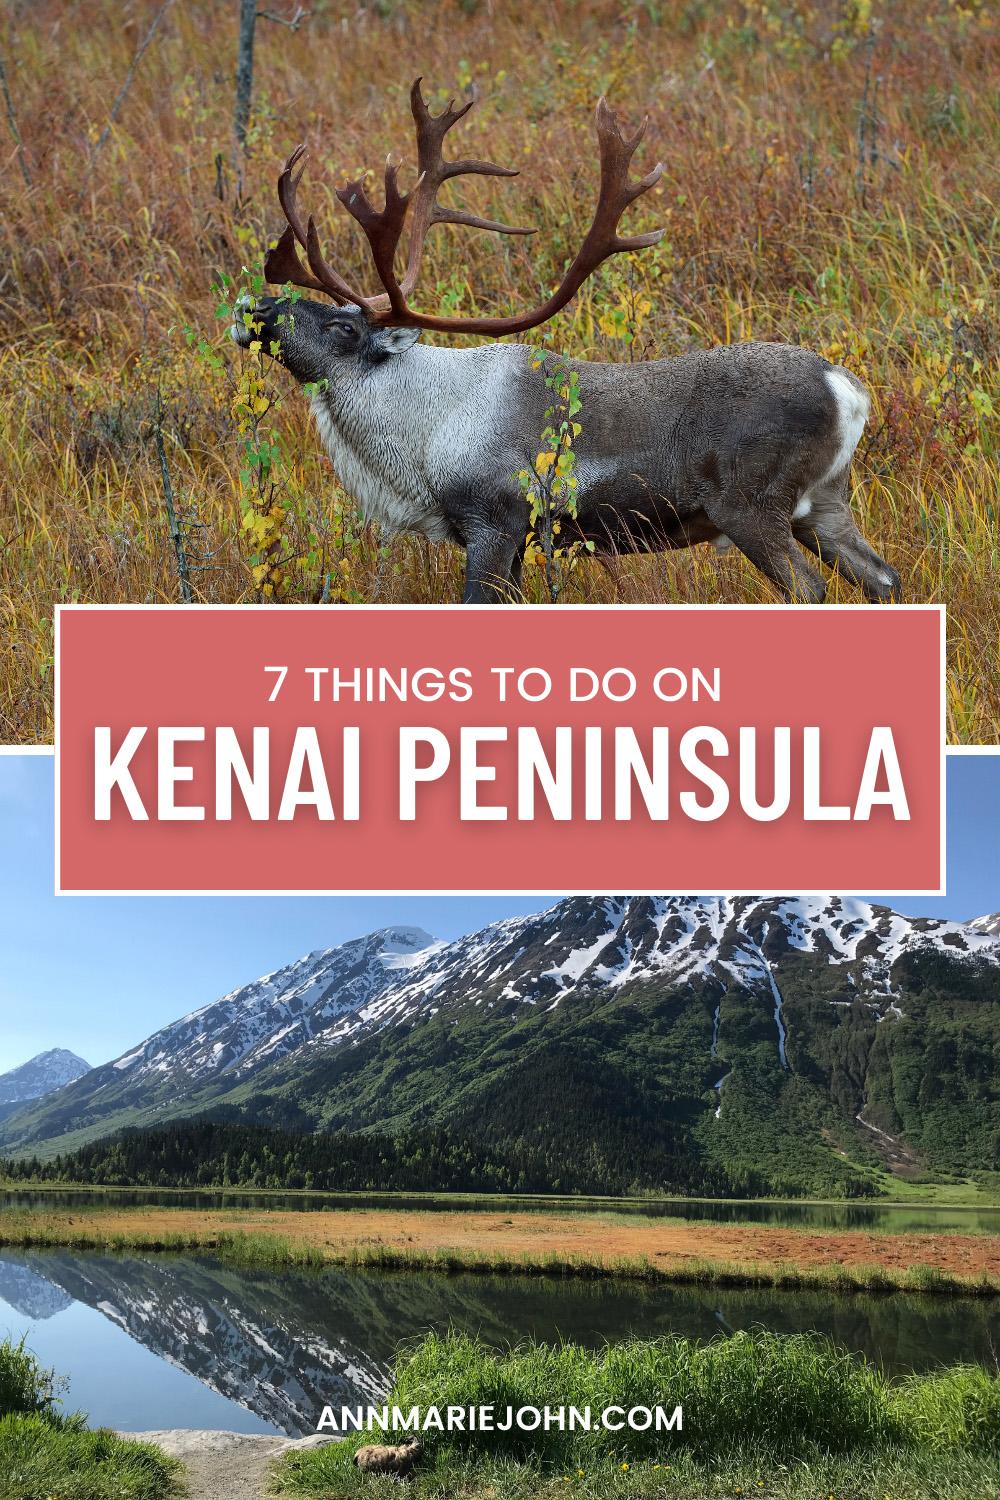 Things to do on Kenai Peninsula